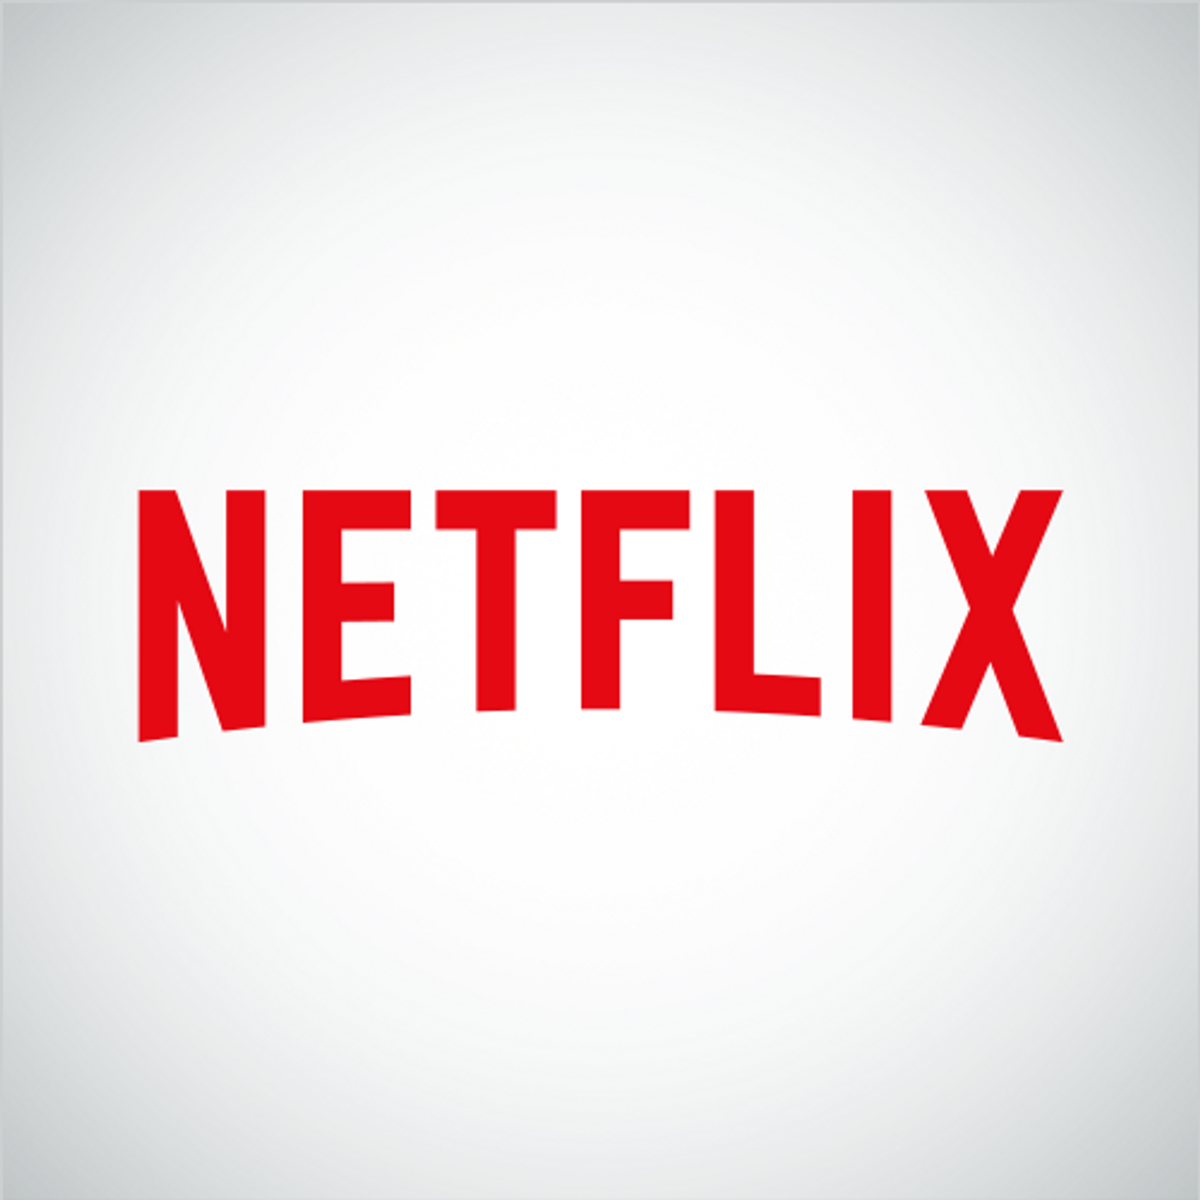 An Open Letter To Netflix